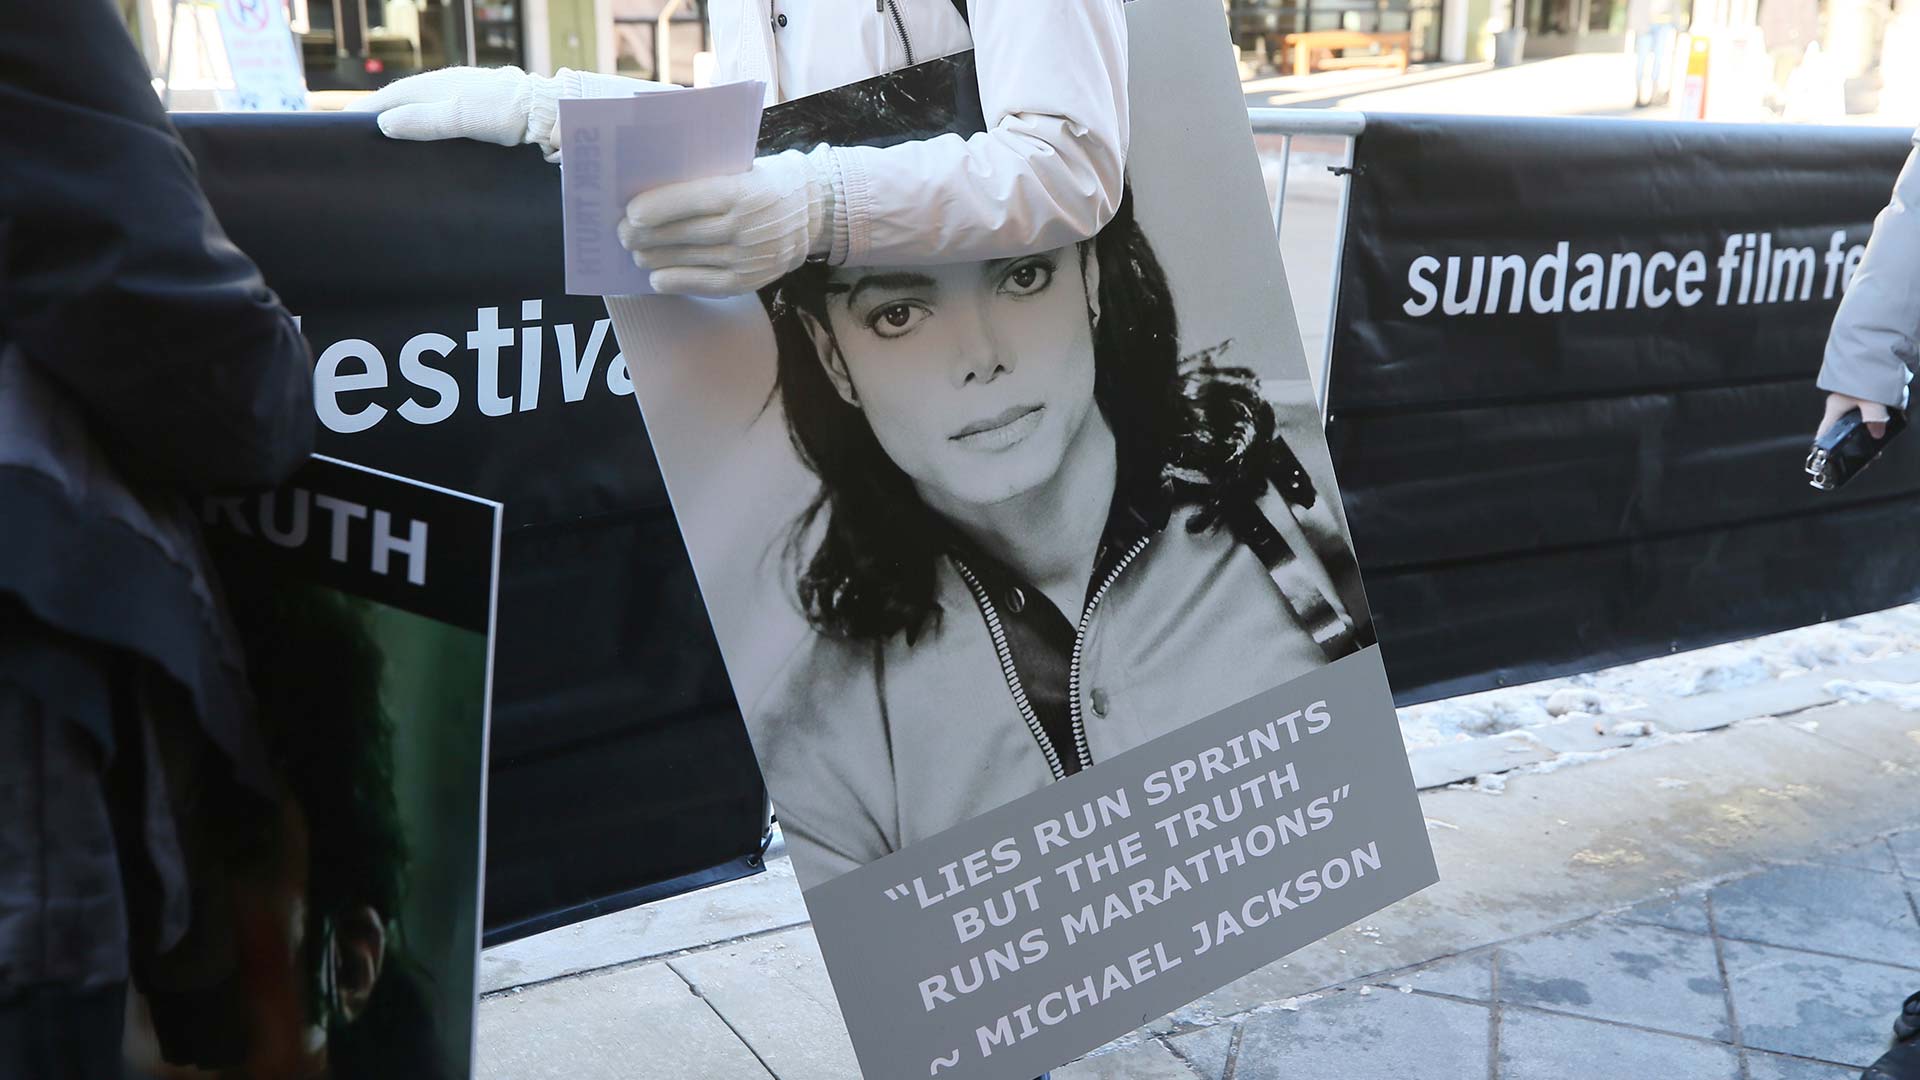 La familia de Michael Jackson ataca a los medios por difundir las "mentiras" de 'Leaving Neverland'